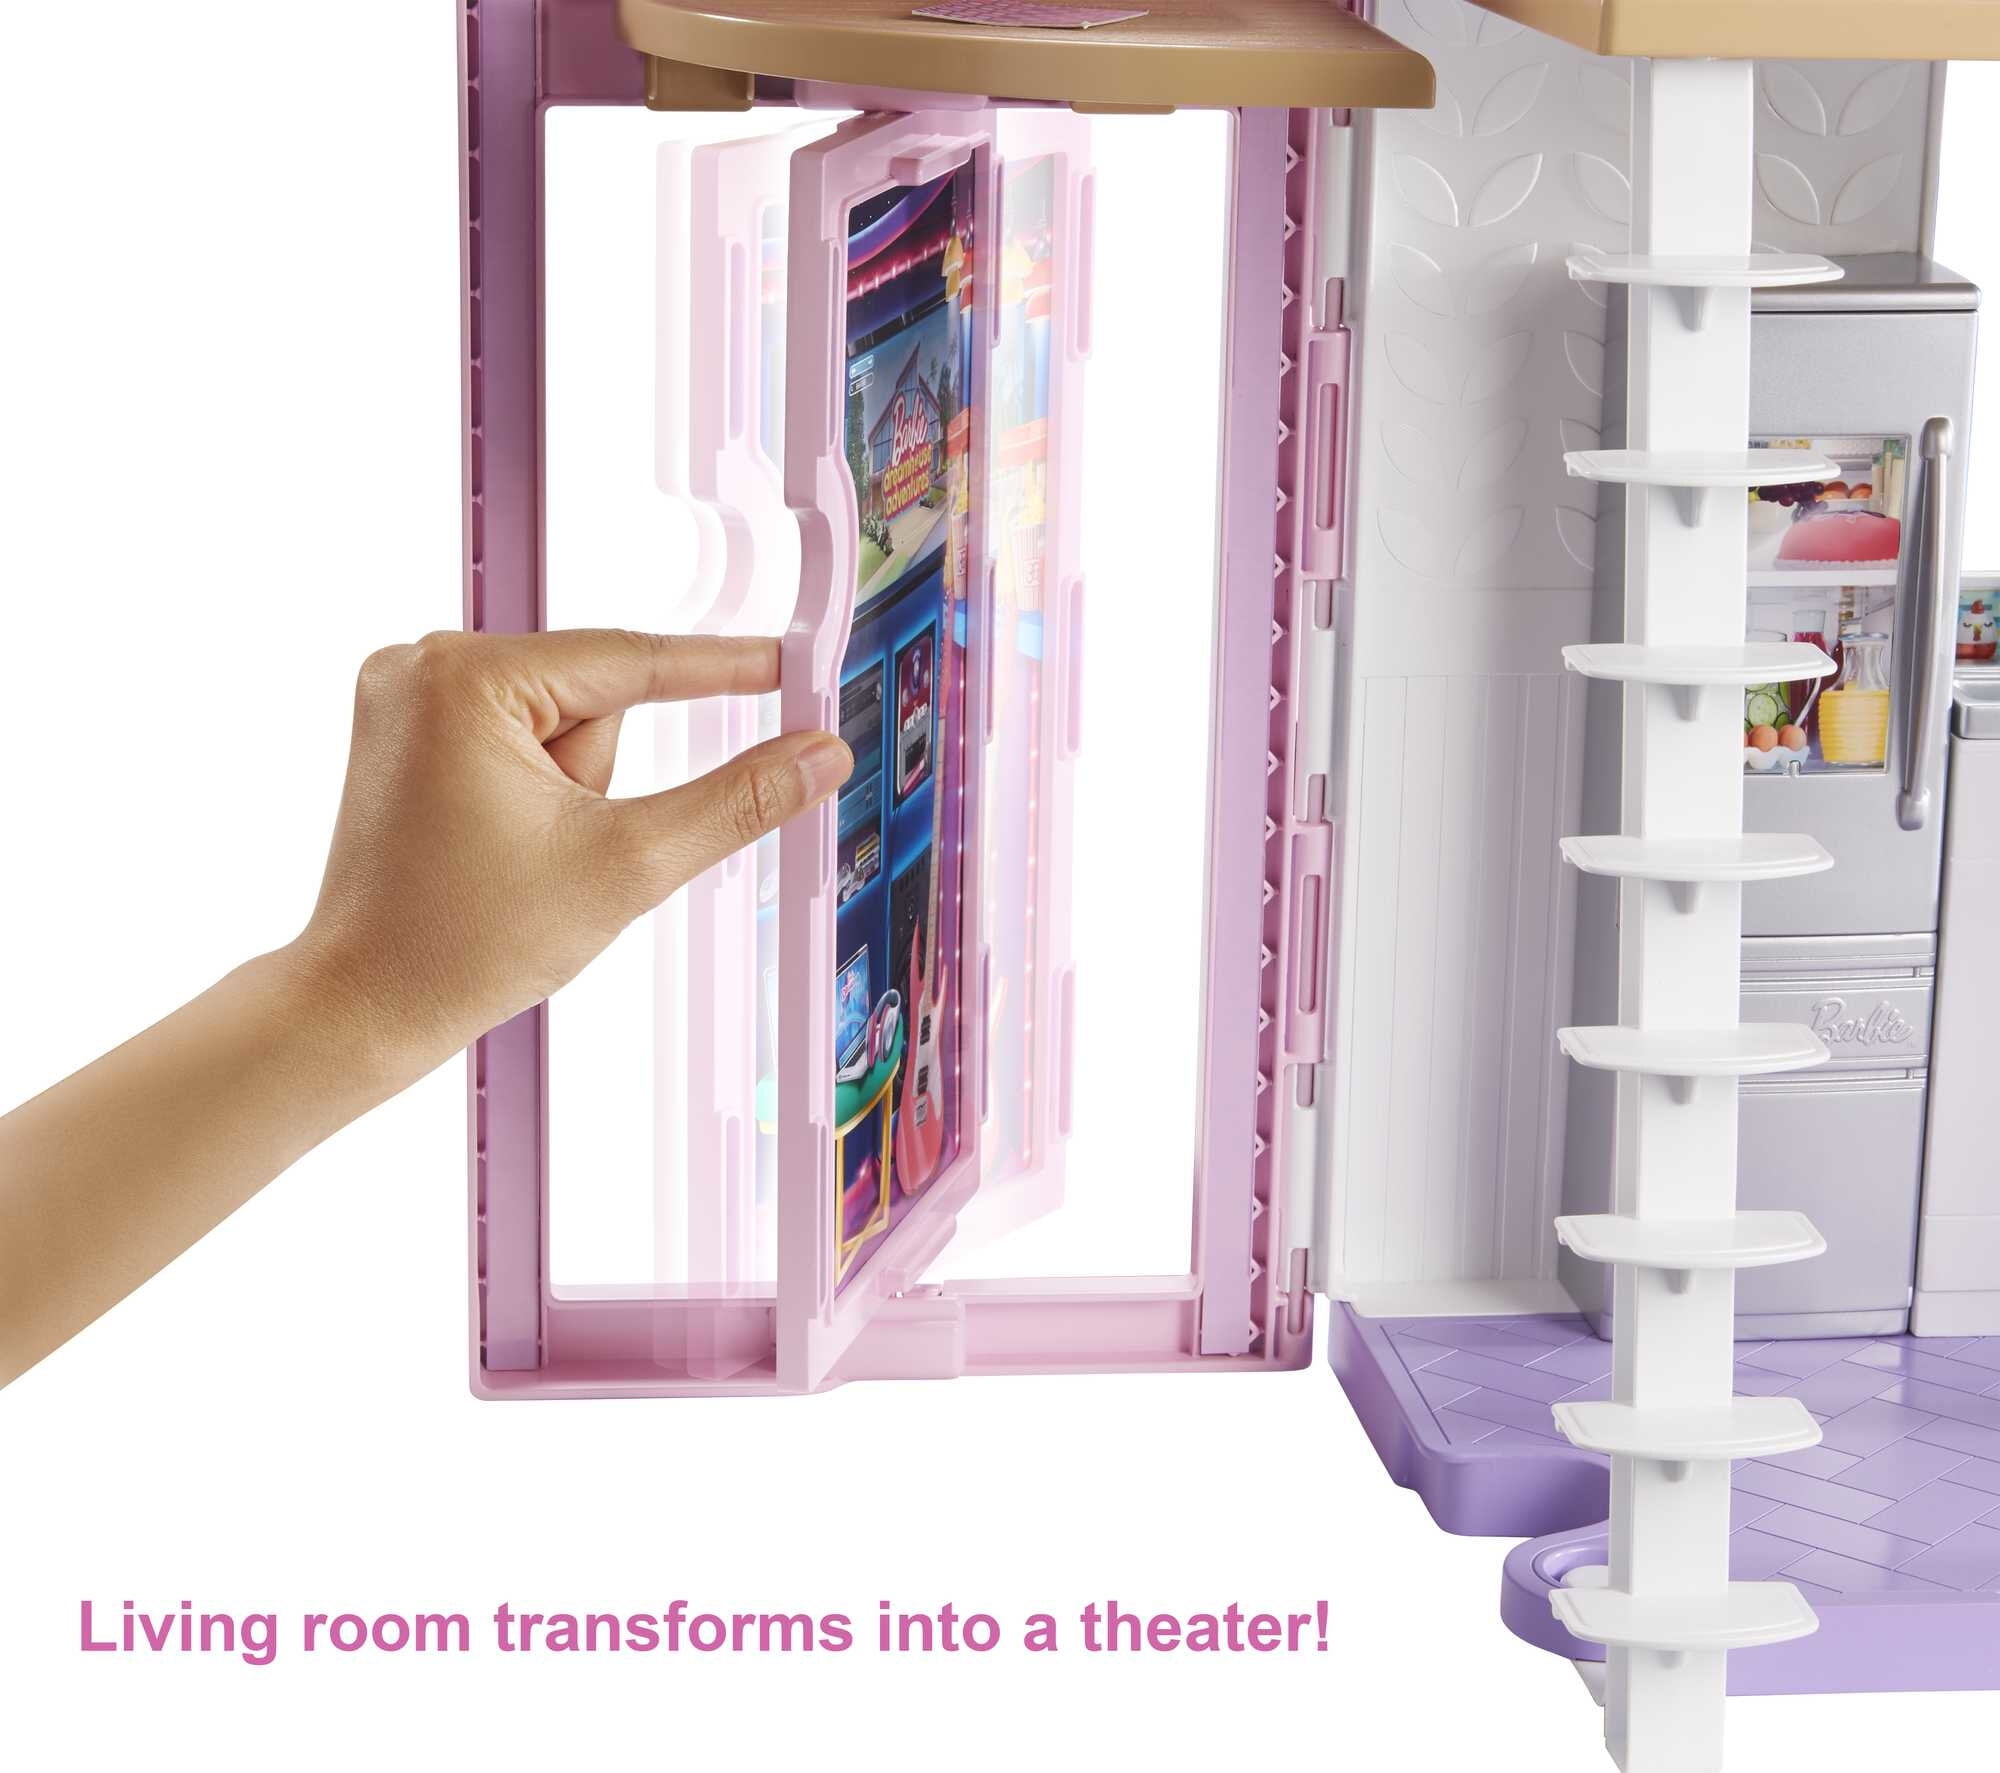 Maison De Poupée Mattel Barbie Malibu House 2022 à Prix Carrefour